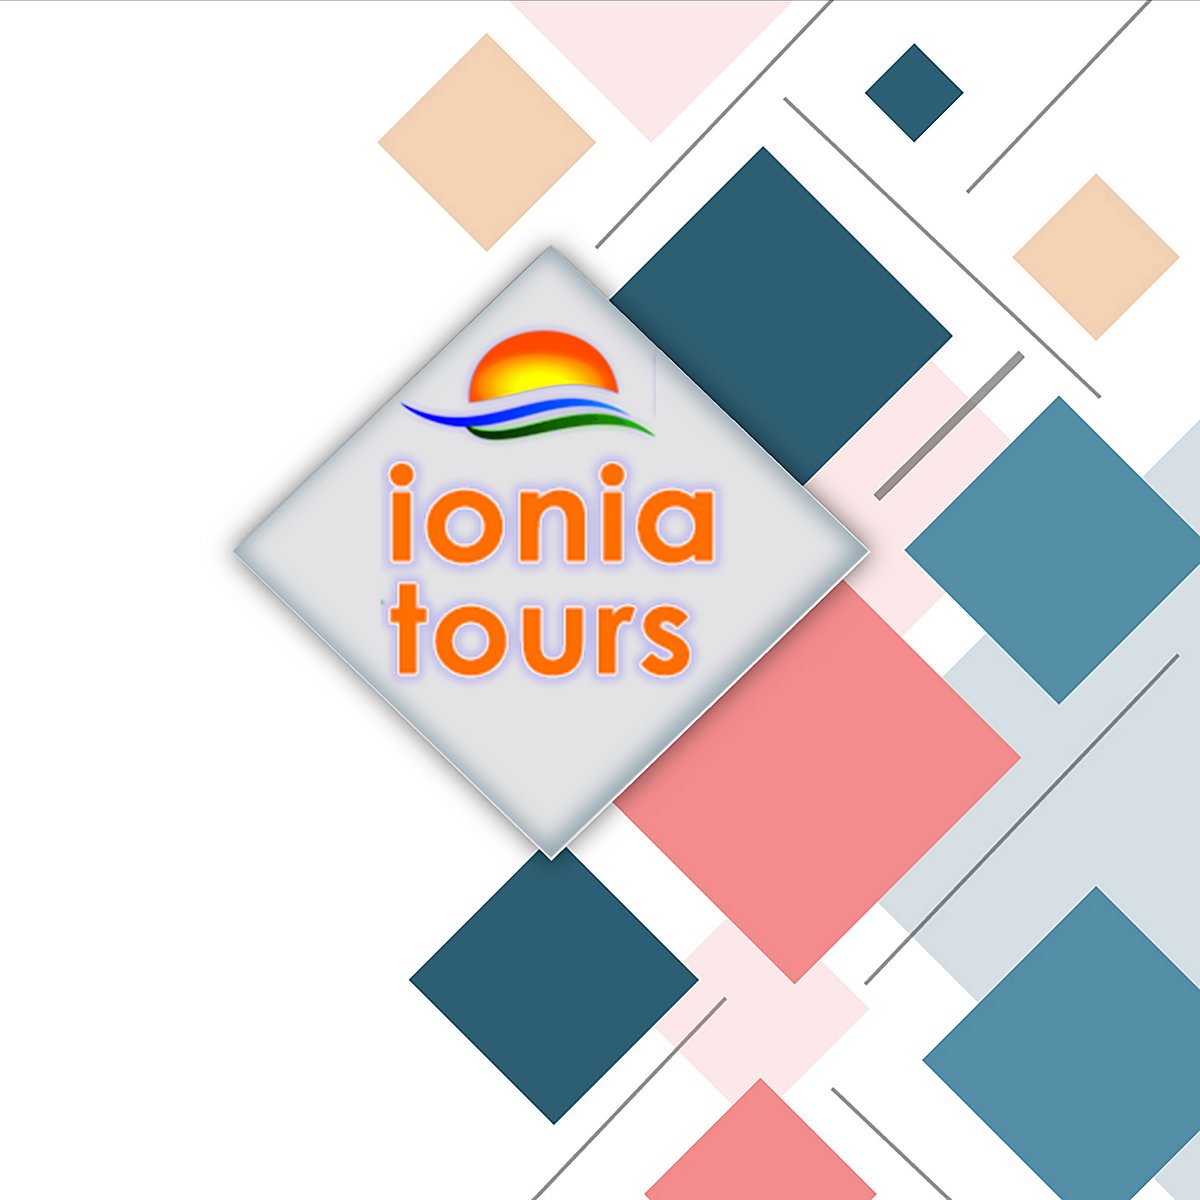 ionia tours didim